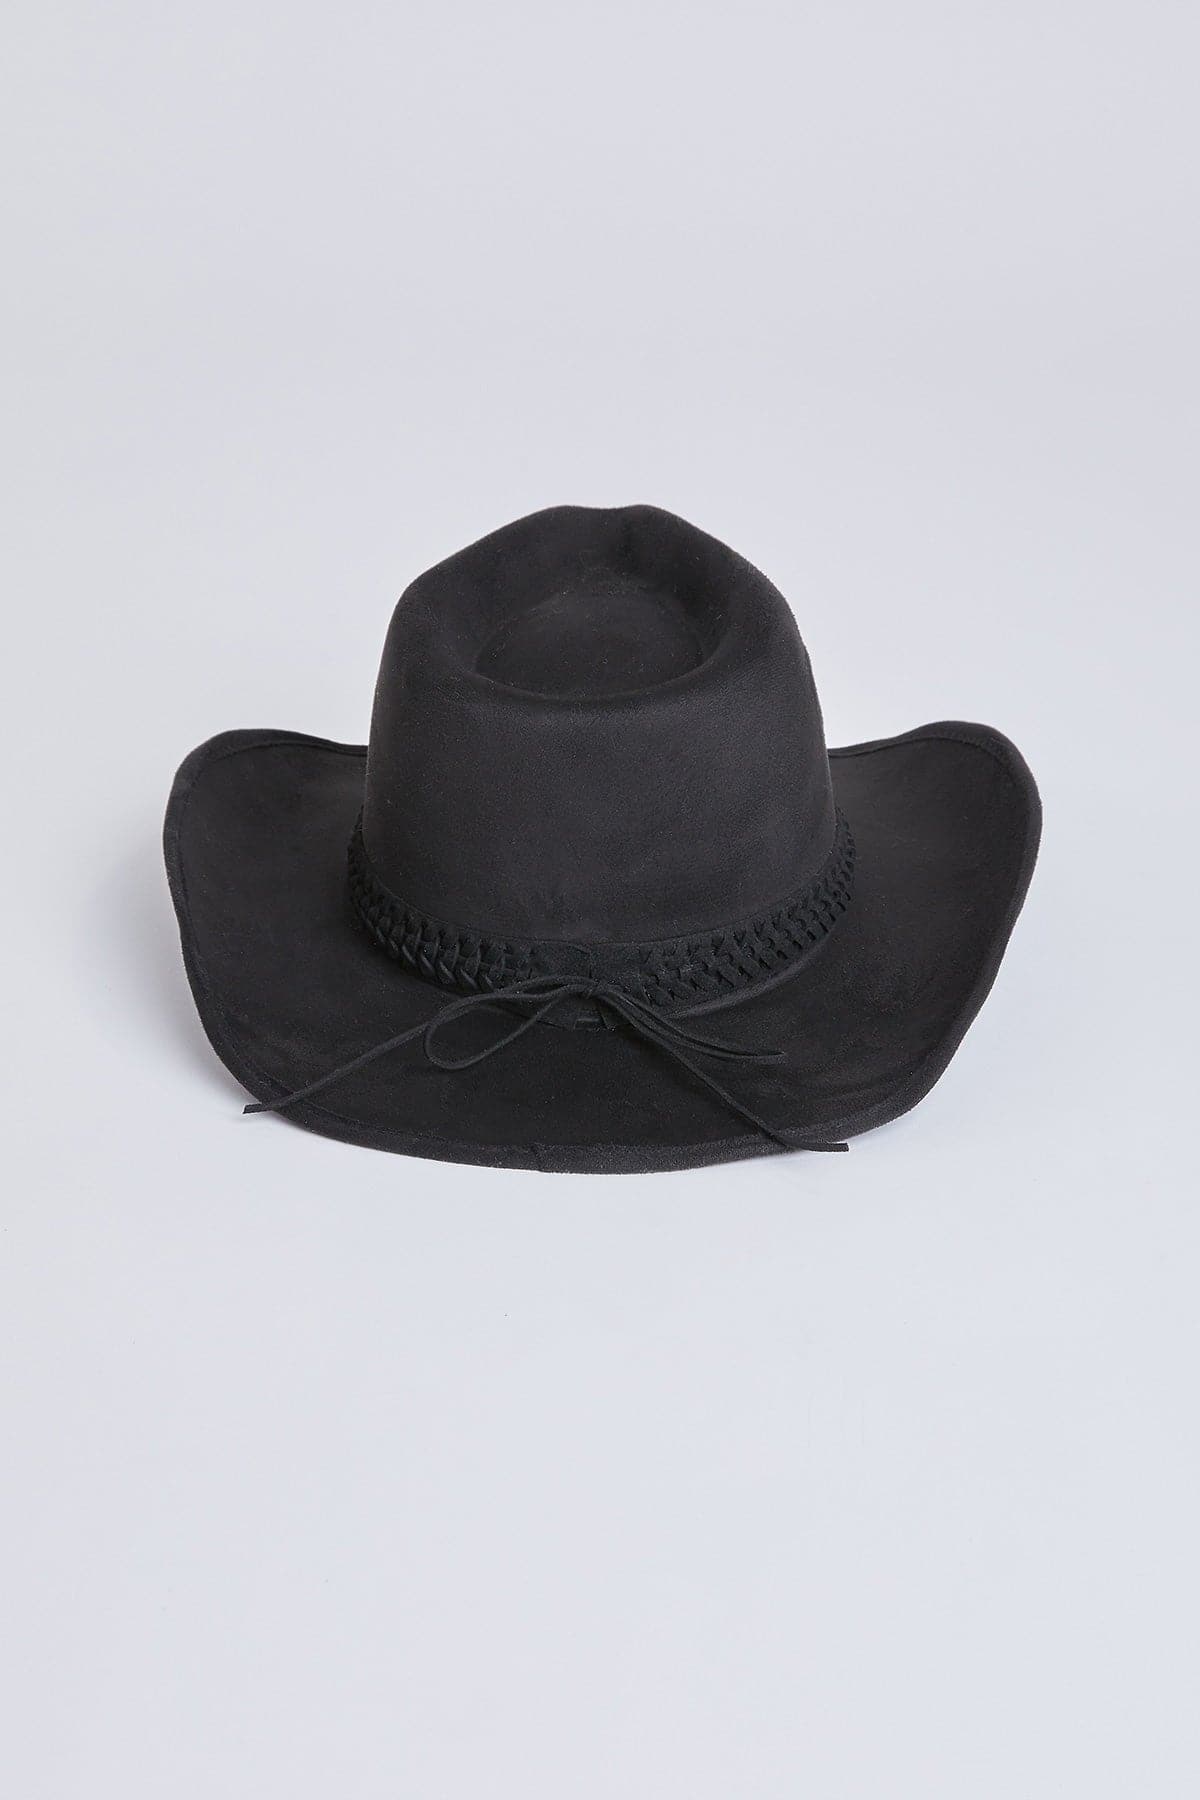 Women’s Faux Suede Cowboy Hat